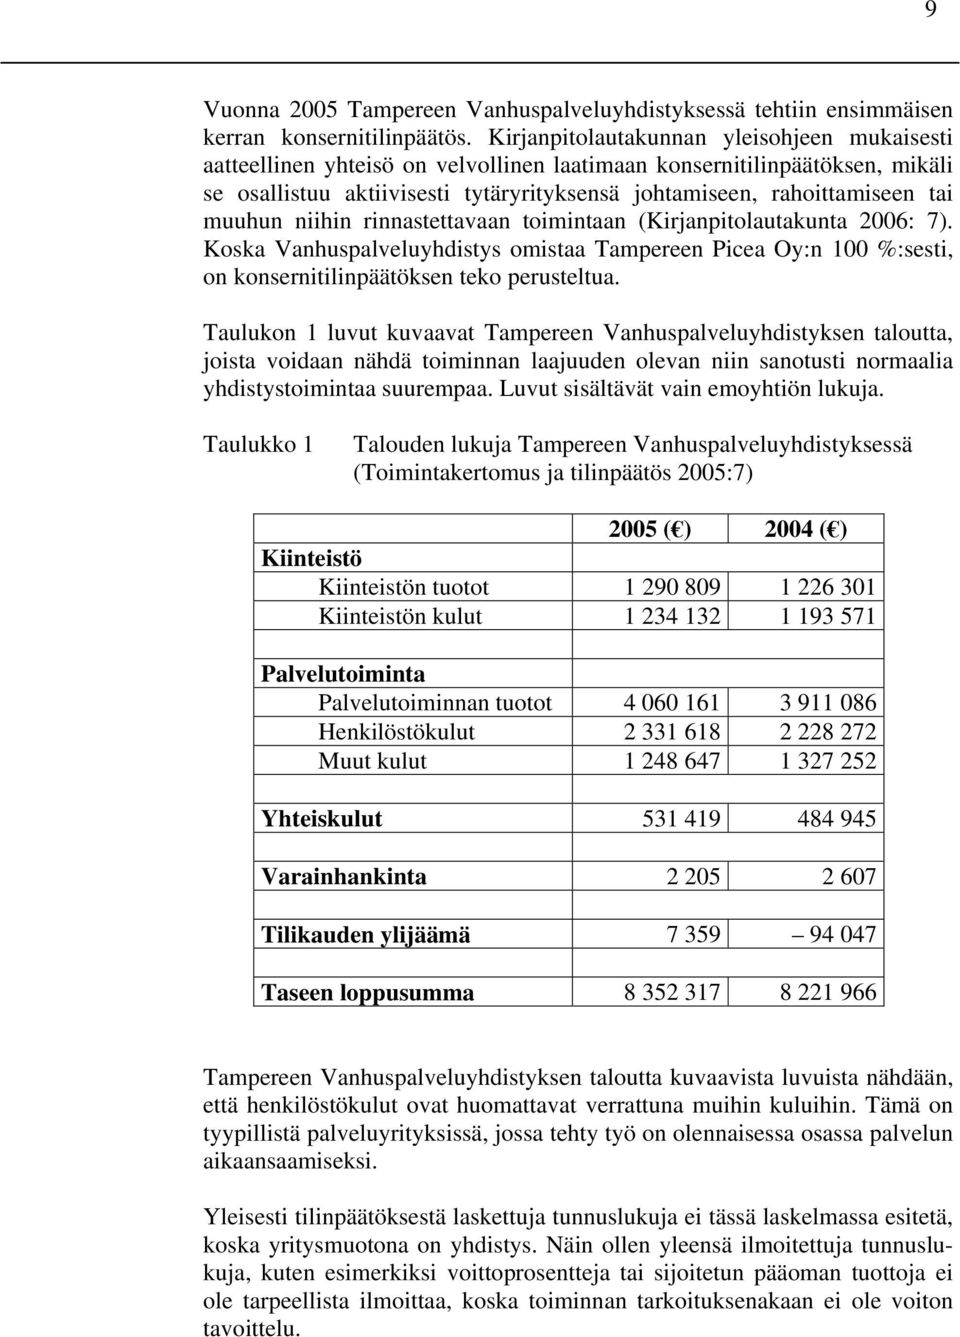 muuhun niihin rinnastettavaan toimintaan (Kirjanpitolautakunta 2006: 7). Koska Vanhuspalveluyhdistys omistaa Tampereen Picea Oy:n 100 %:sesti, on konsernitilinpäätöksen teko perusteltua.